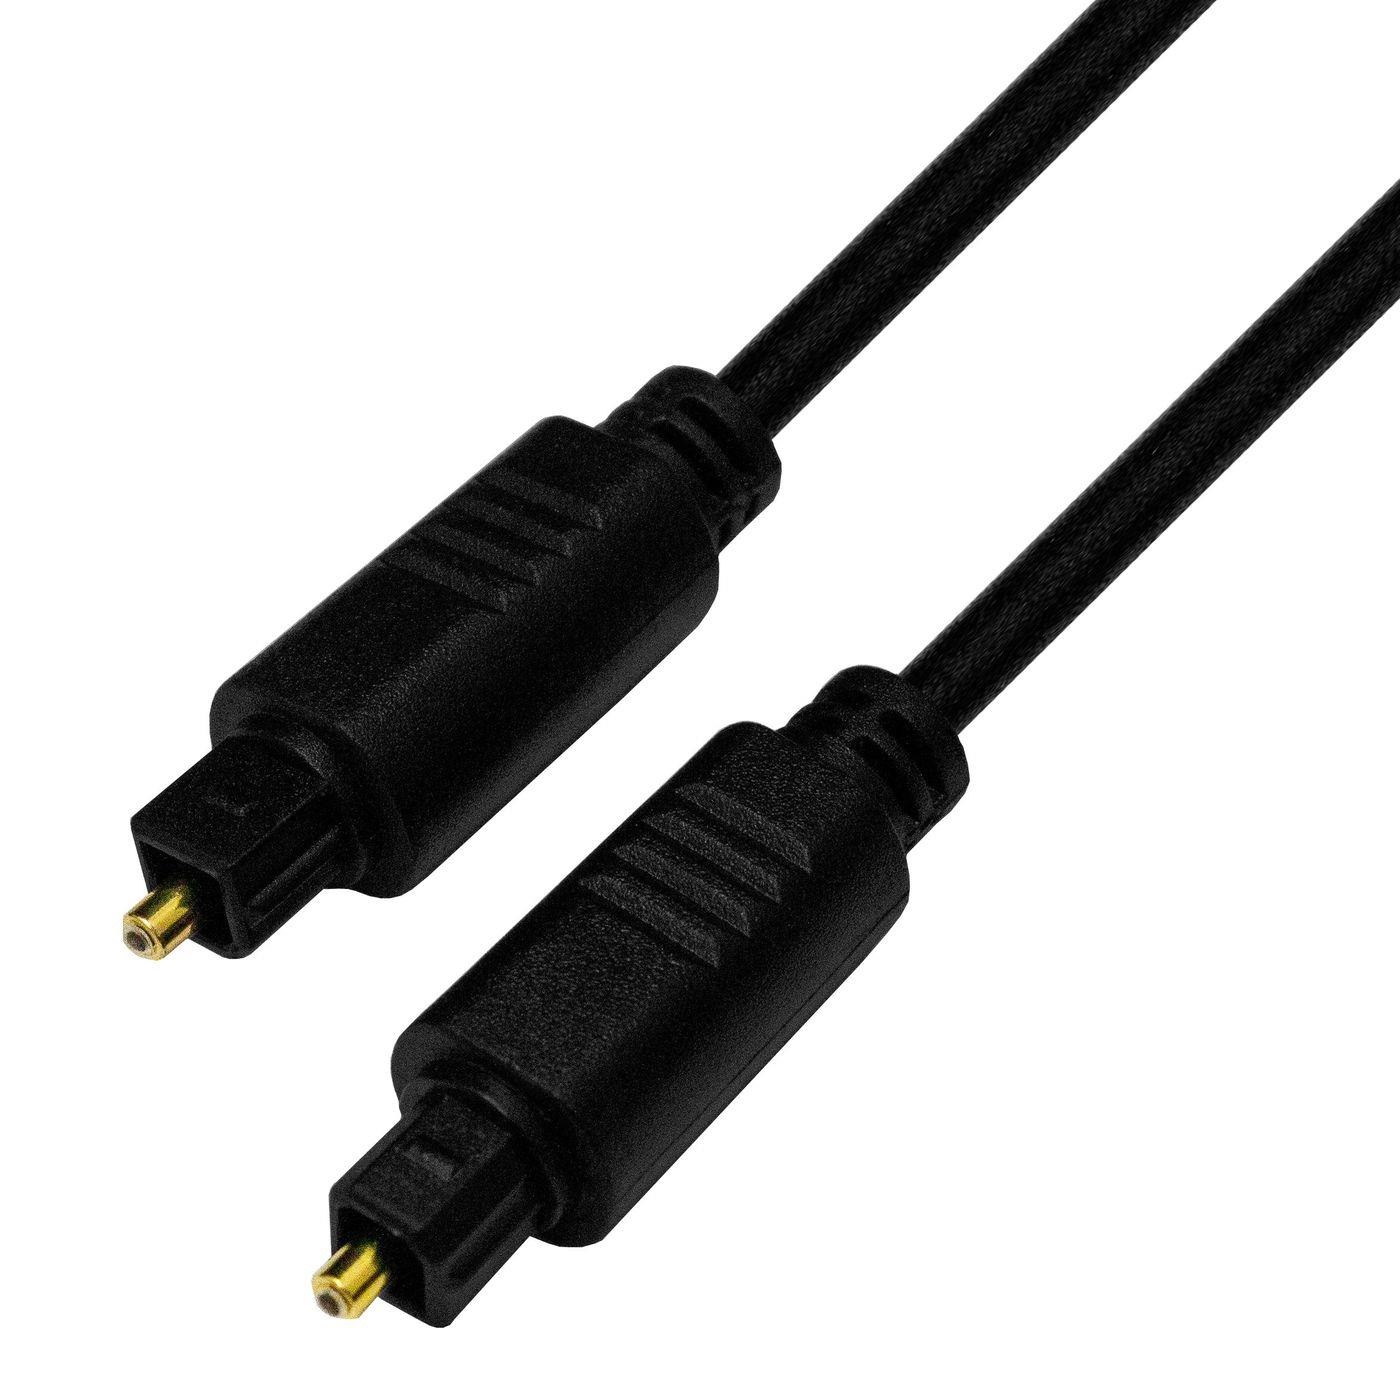 3m Toslink Kabel optisches Digitalkabel Audiokabel Lichtwellenleiter (LWL) Ø4mm 